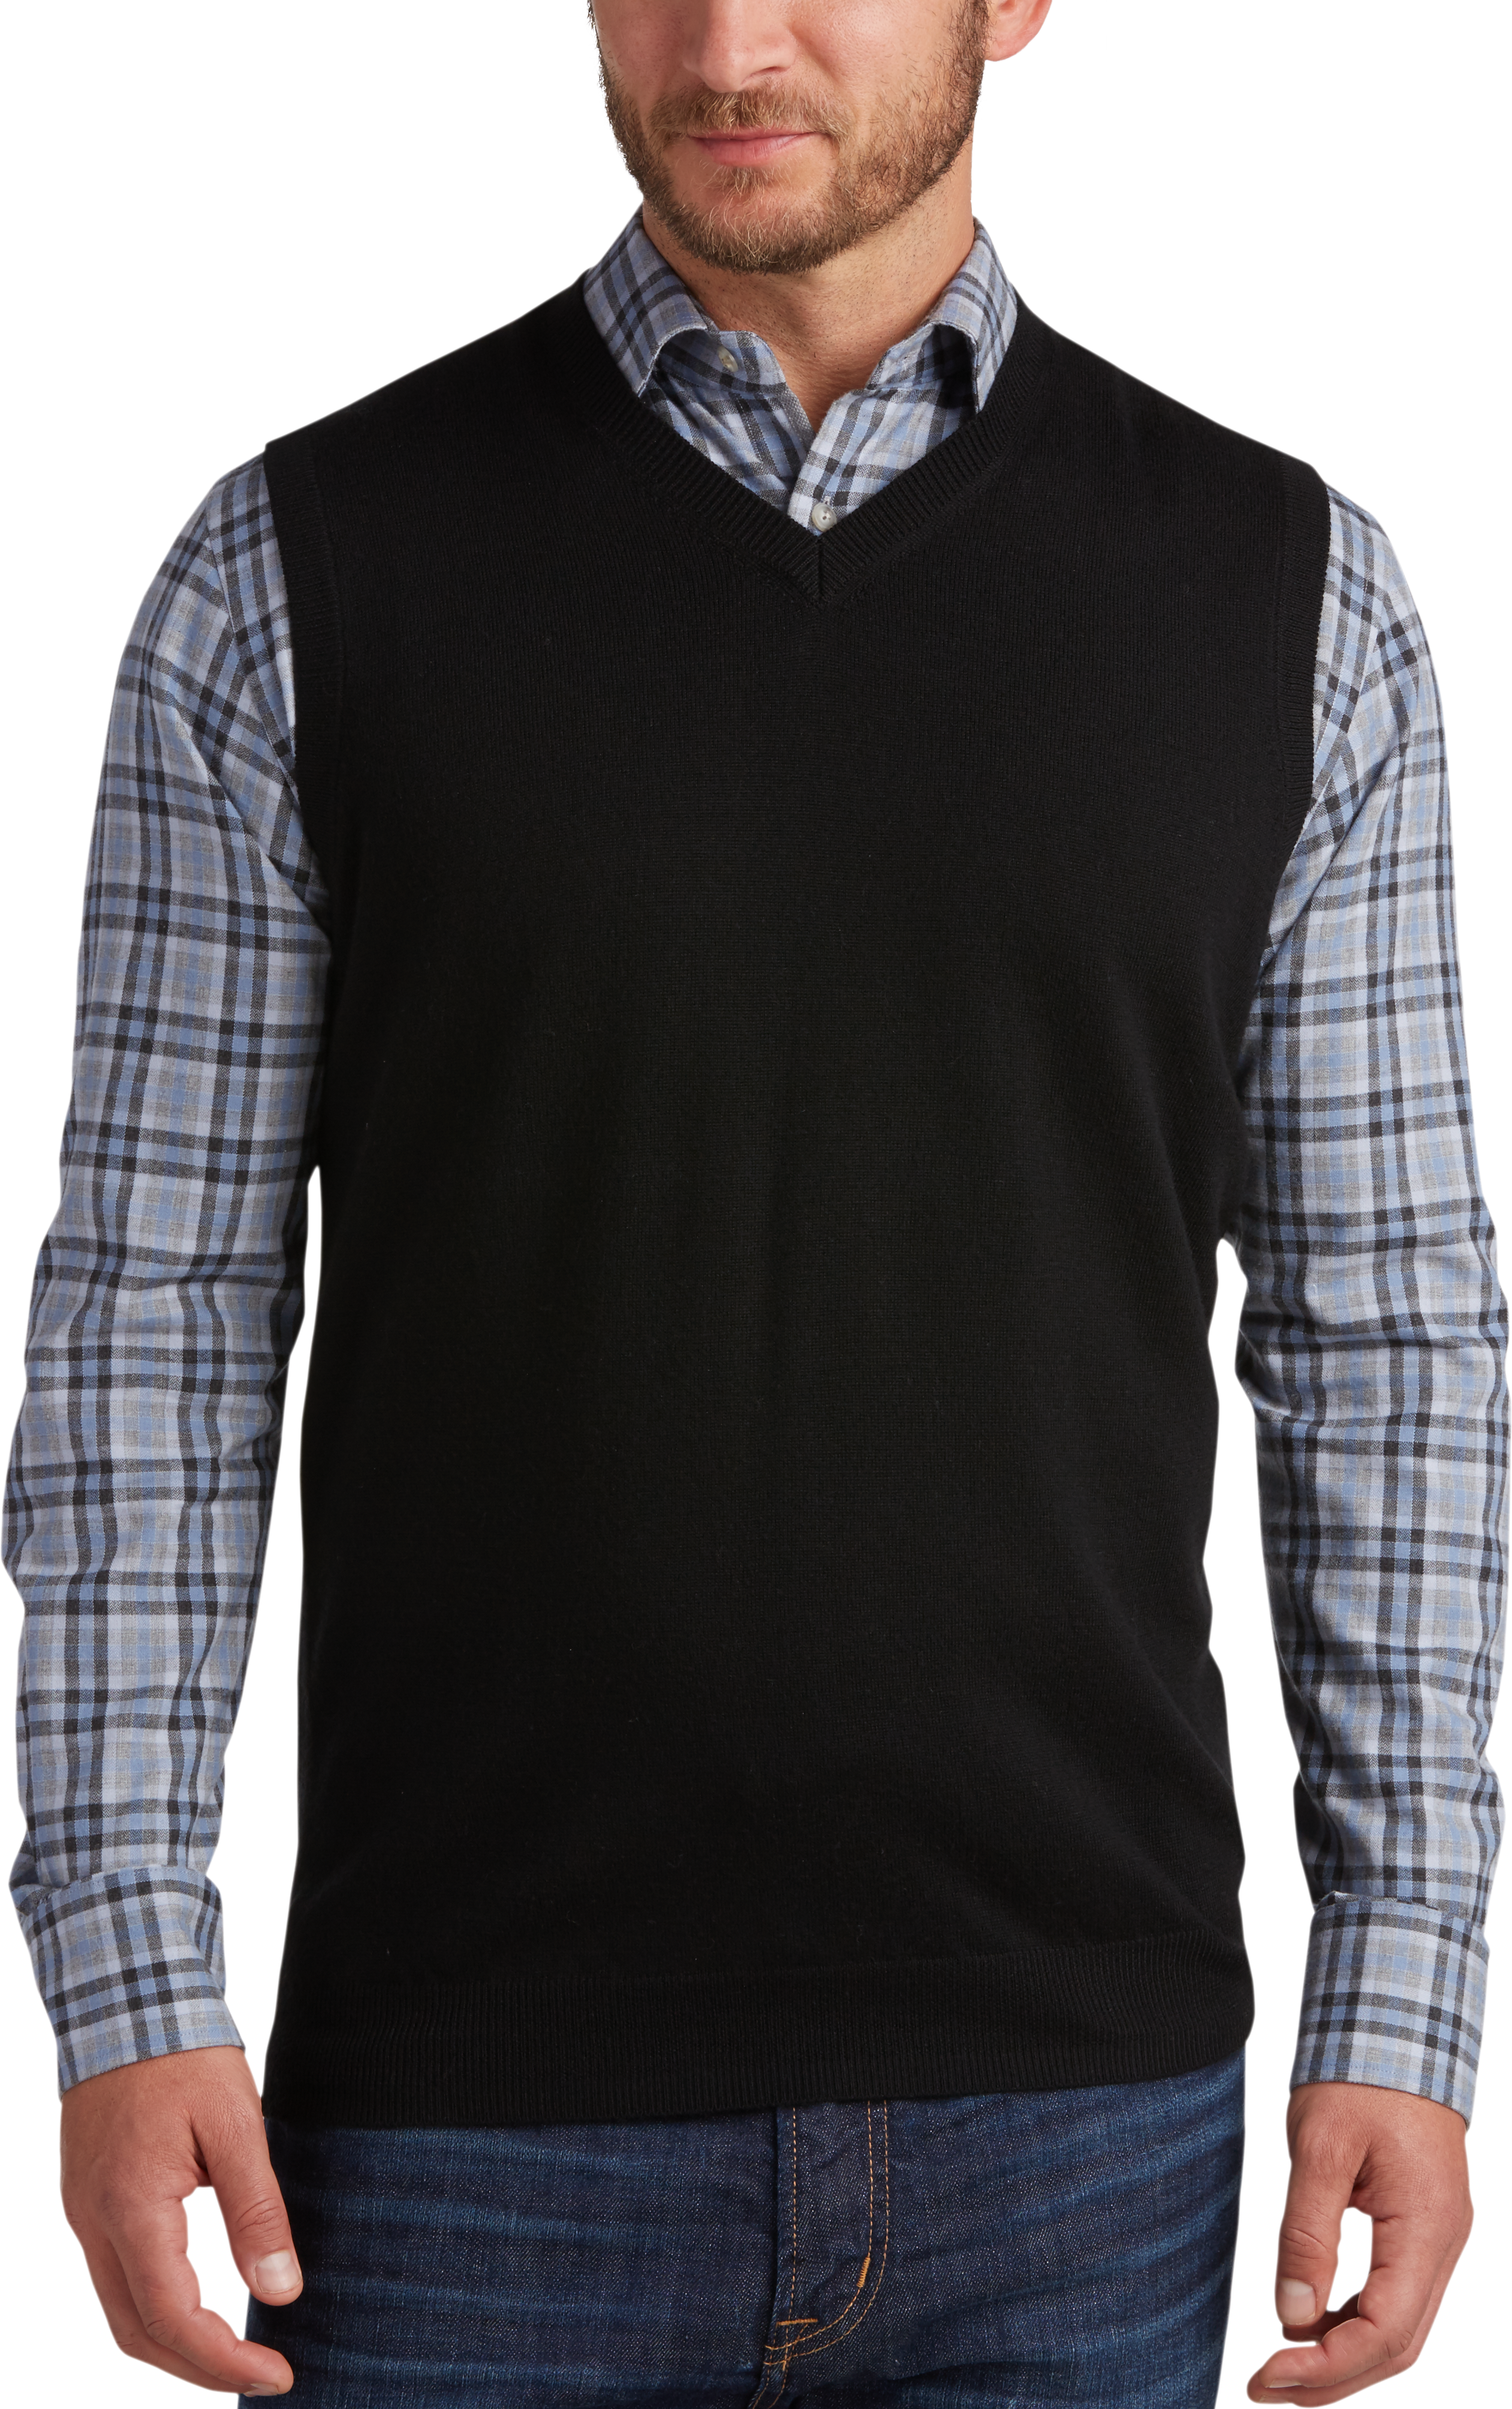 Joseph Abboud Black V-Neck Merino Wool Sweater Vest - Men's Sweater ...